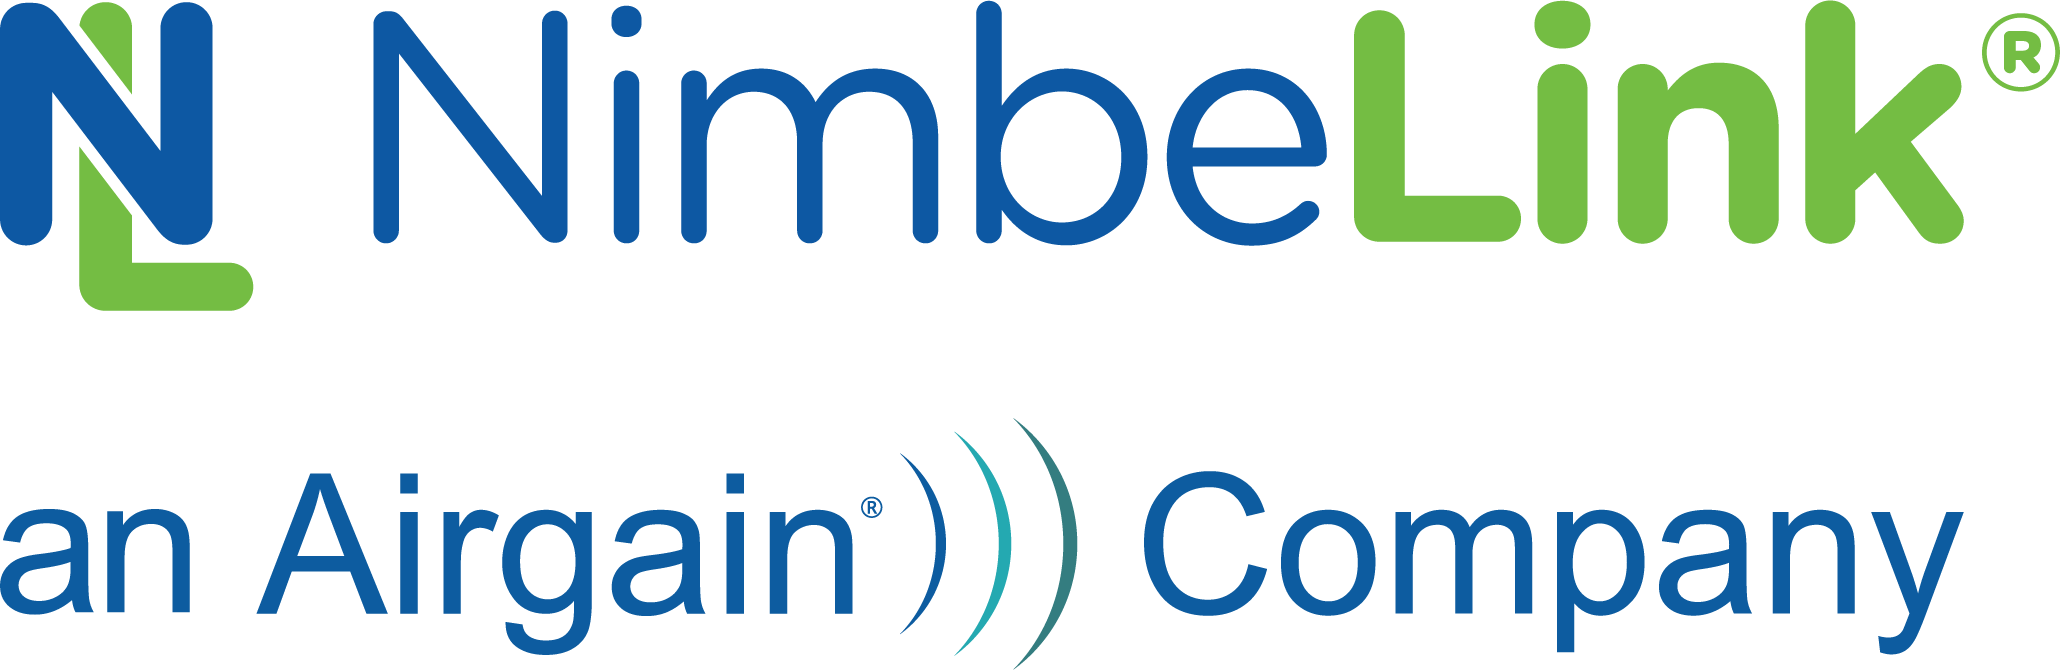 NimbeLink Logo